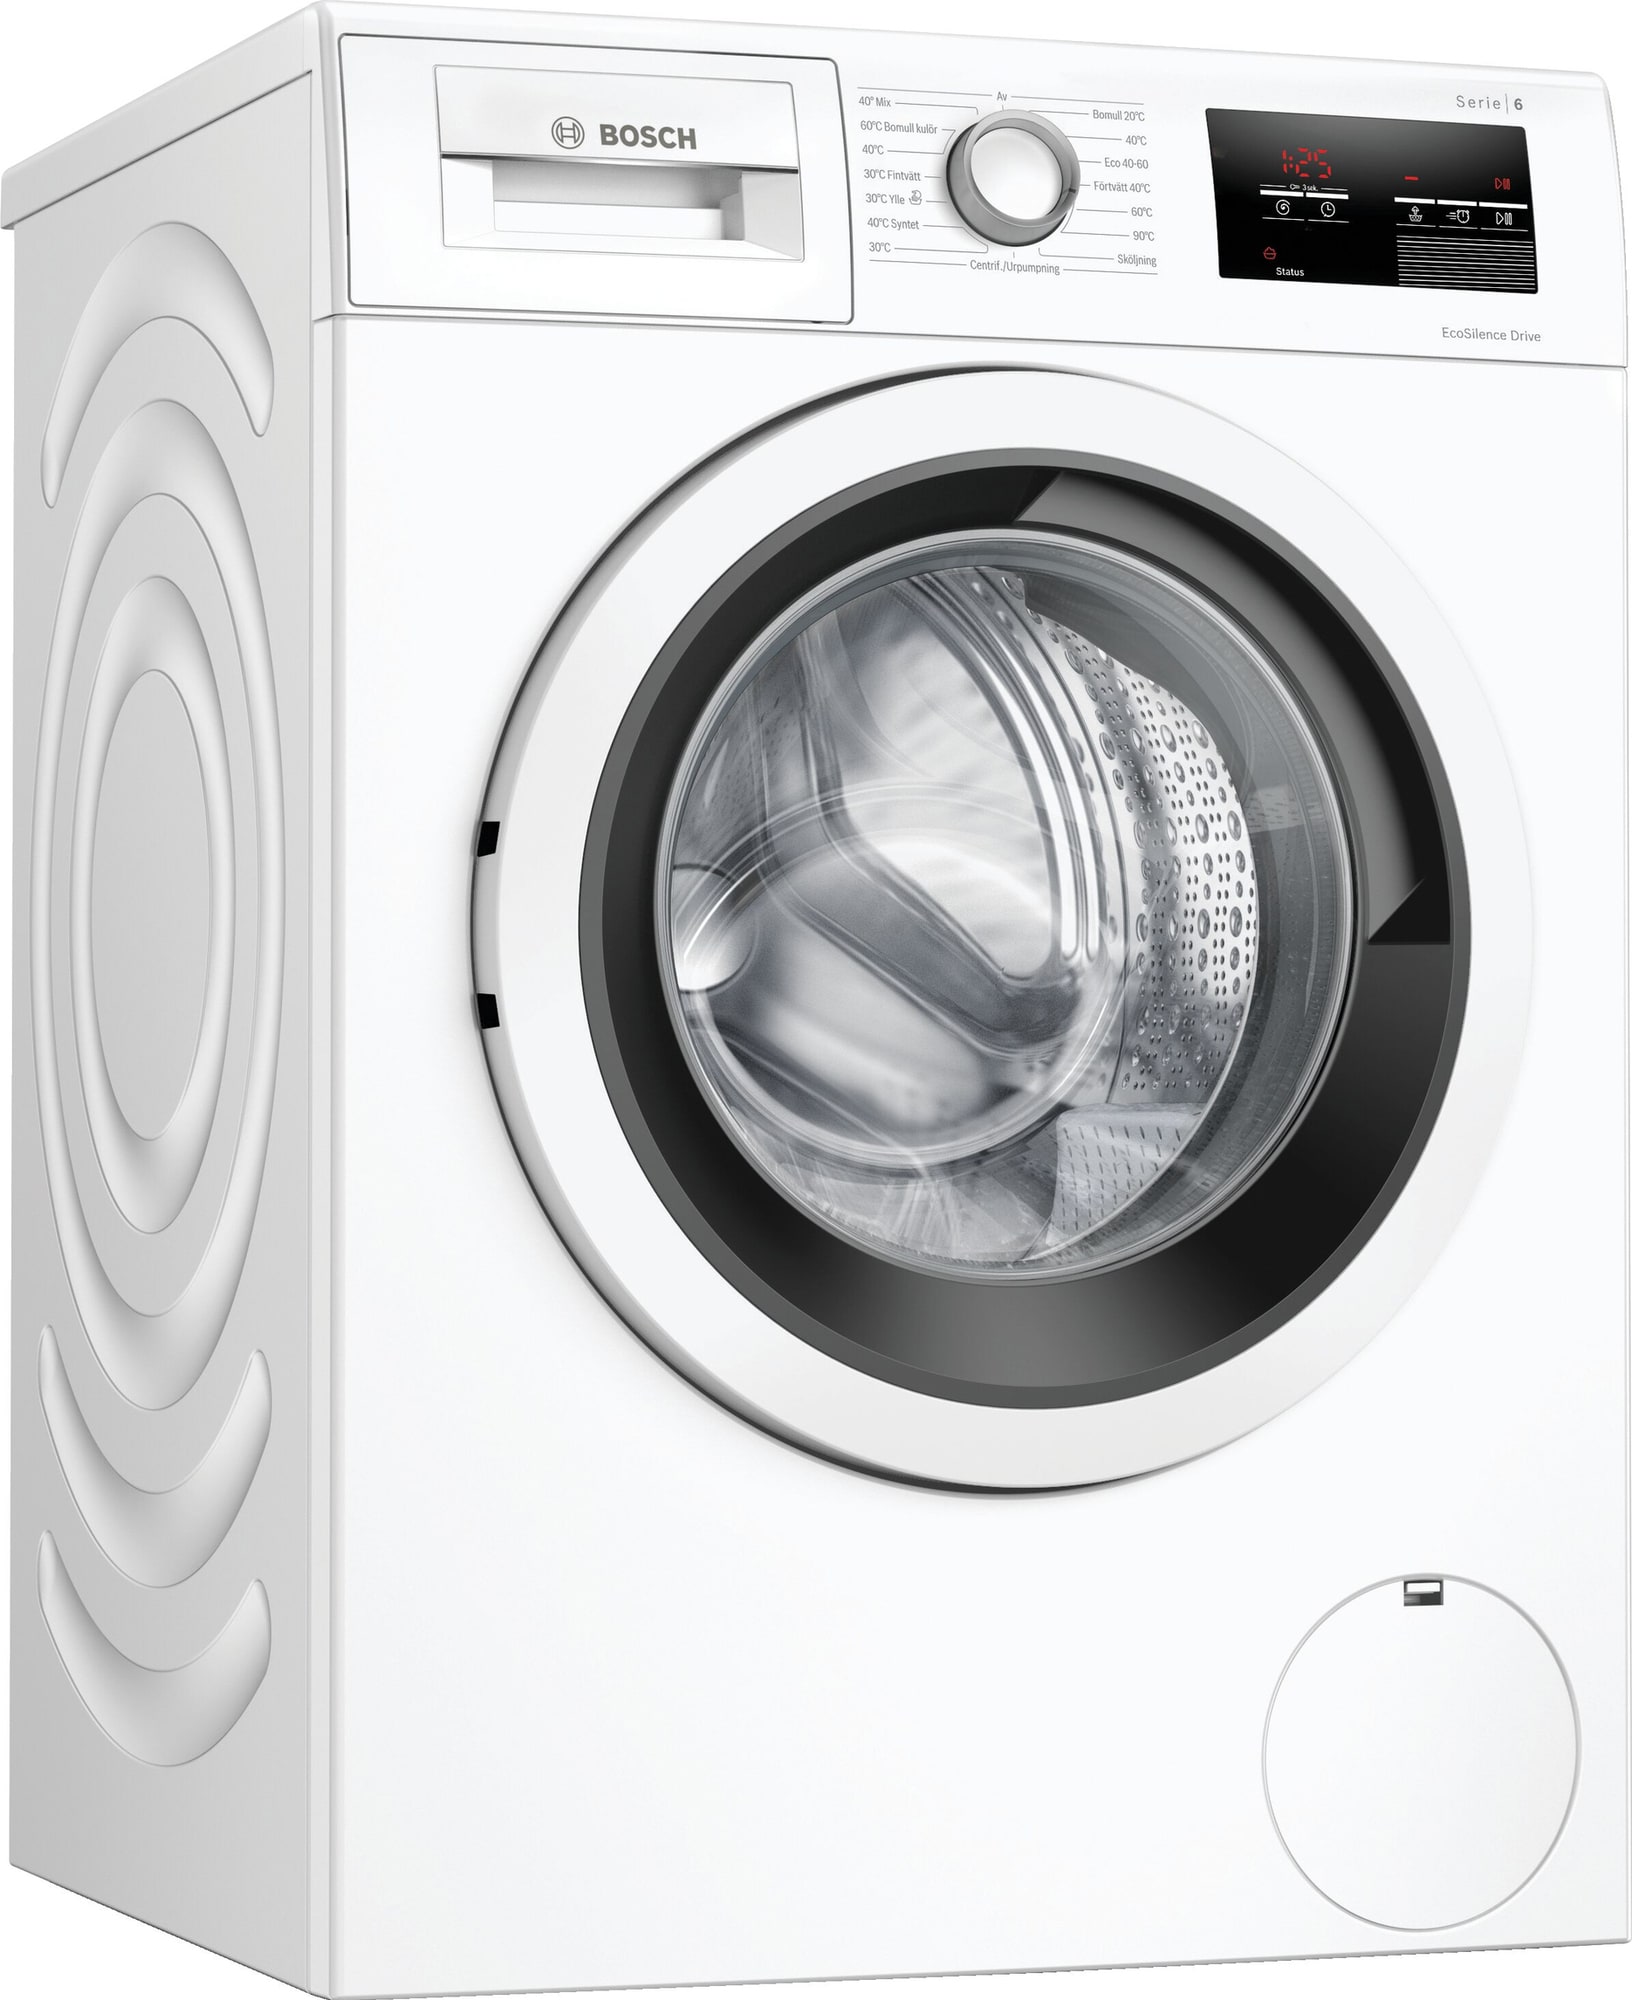 Køb din vaskemaskine online til meget lav pris!